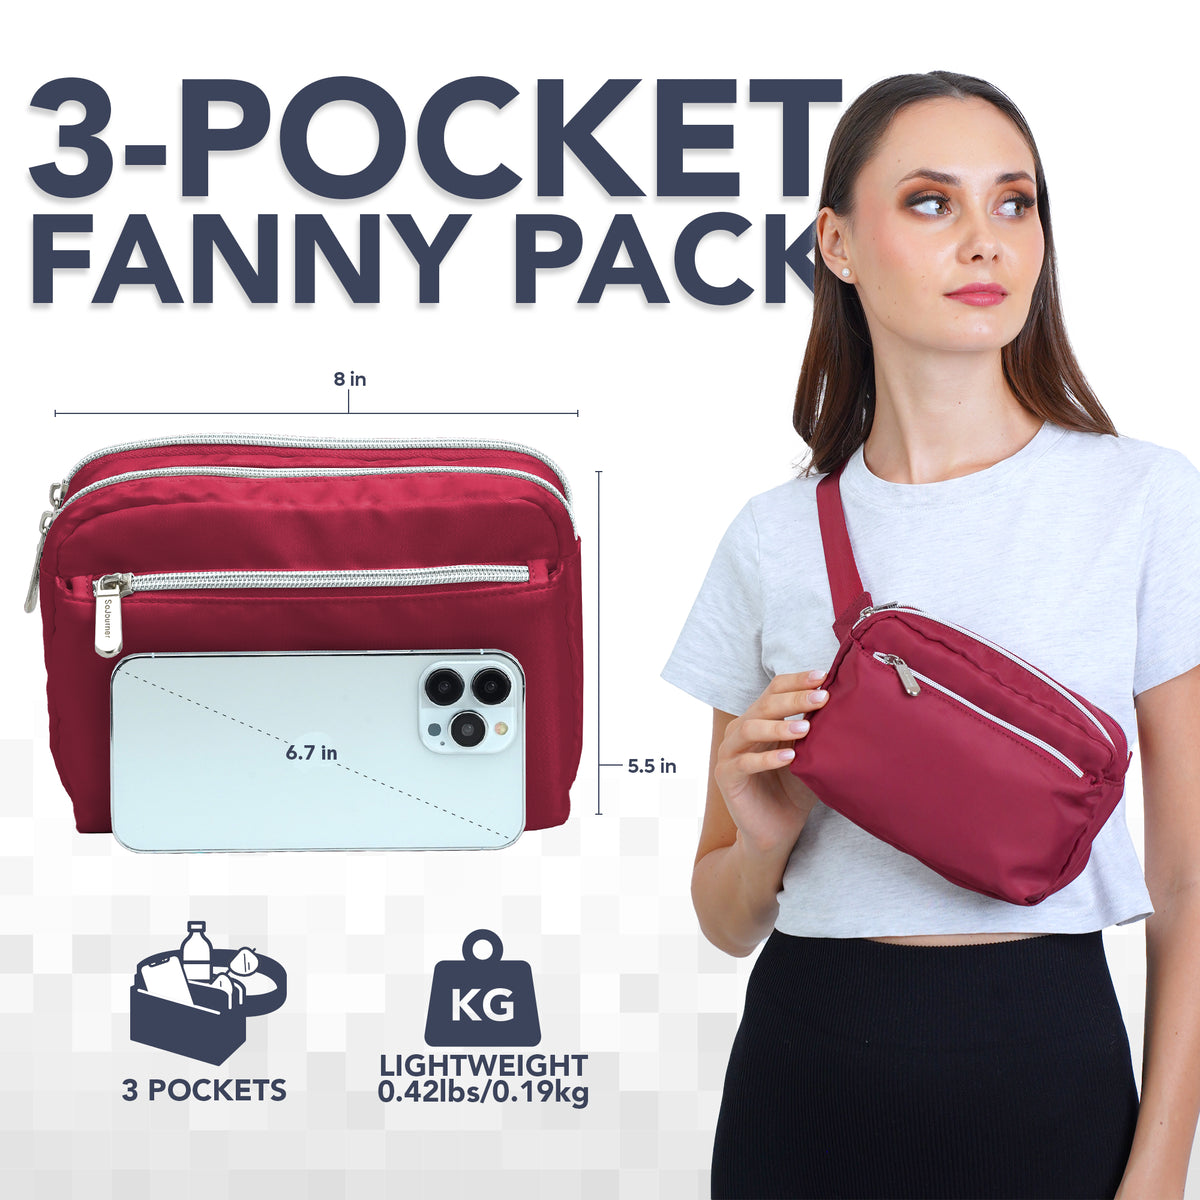 Wine Red Fanny Pack Belt Bag for Women I Cross Body Fanny Packs for Women - Crossbody Bags small Waist Bag Men